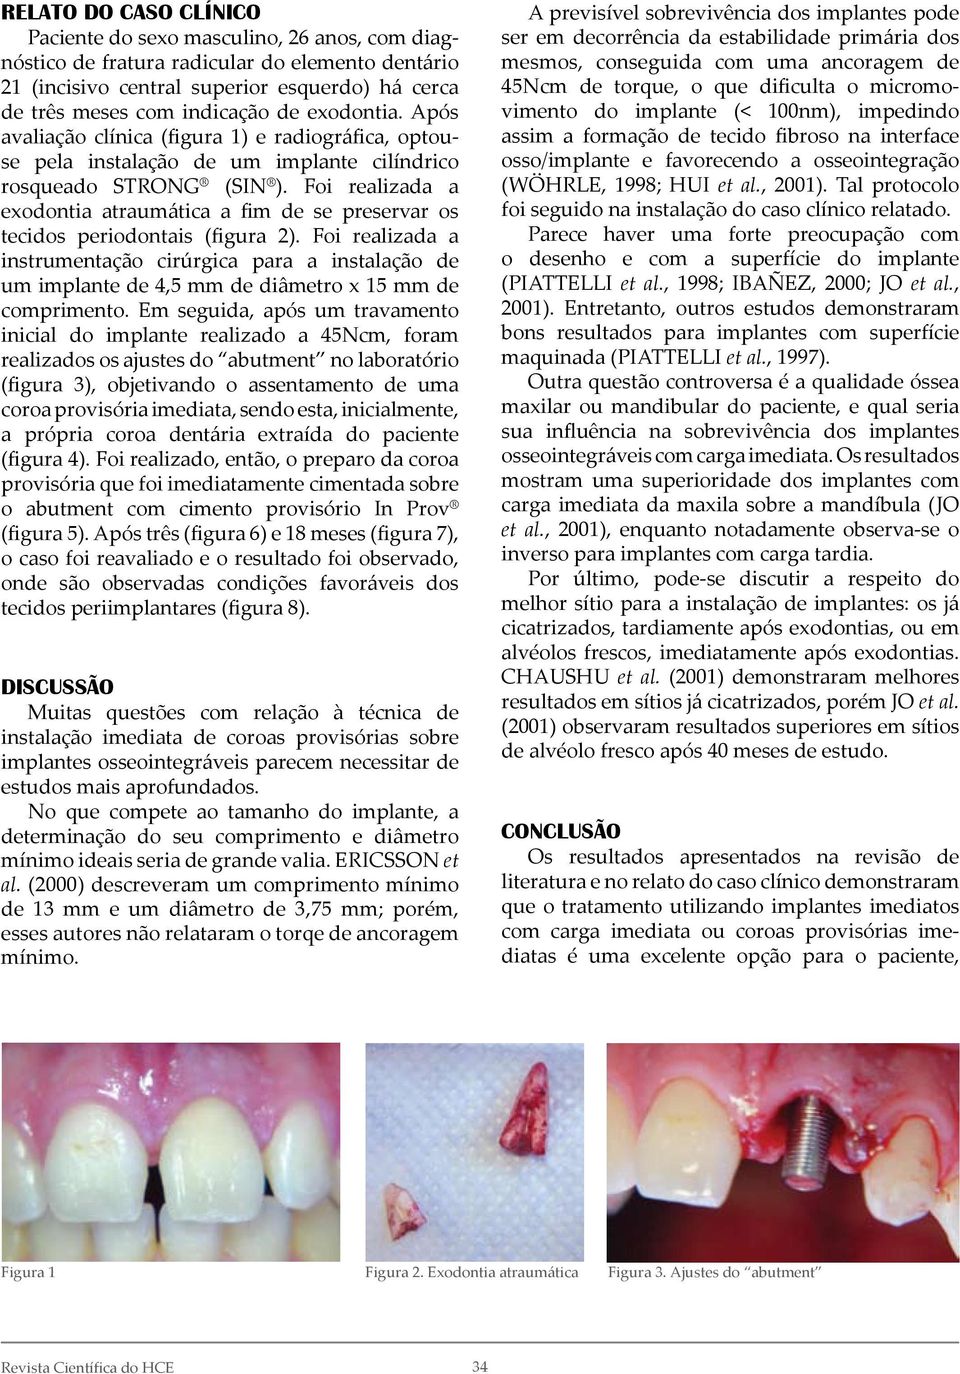 Foi realizada a exodontia atraumática a fim de se preservar os tecidos periodontais (figura 2).